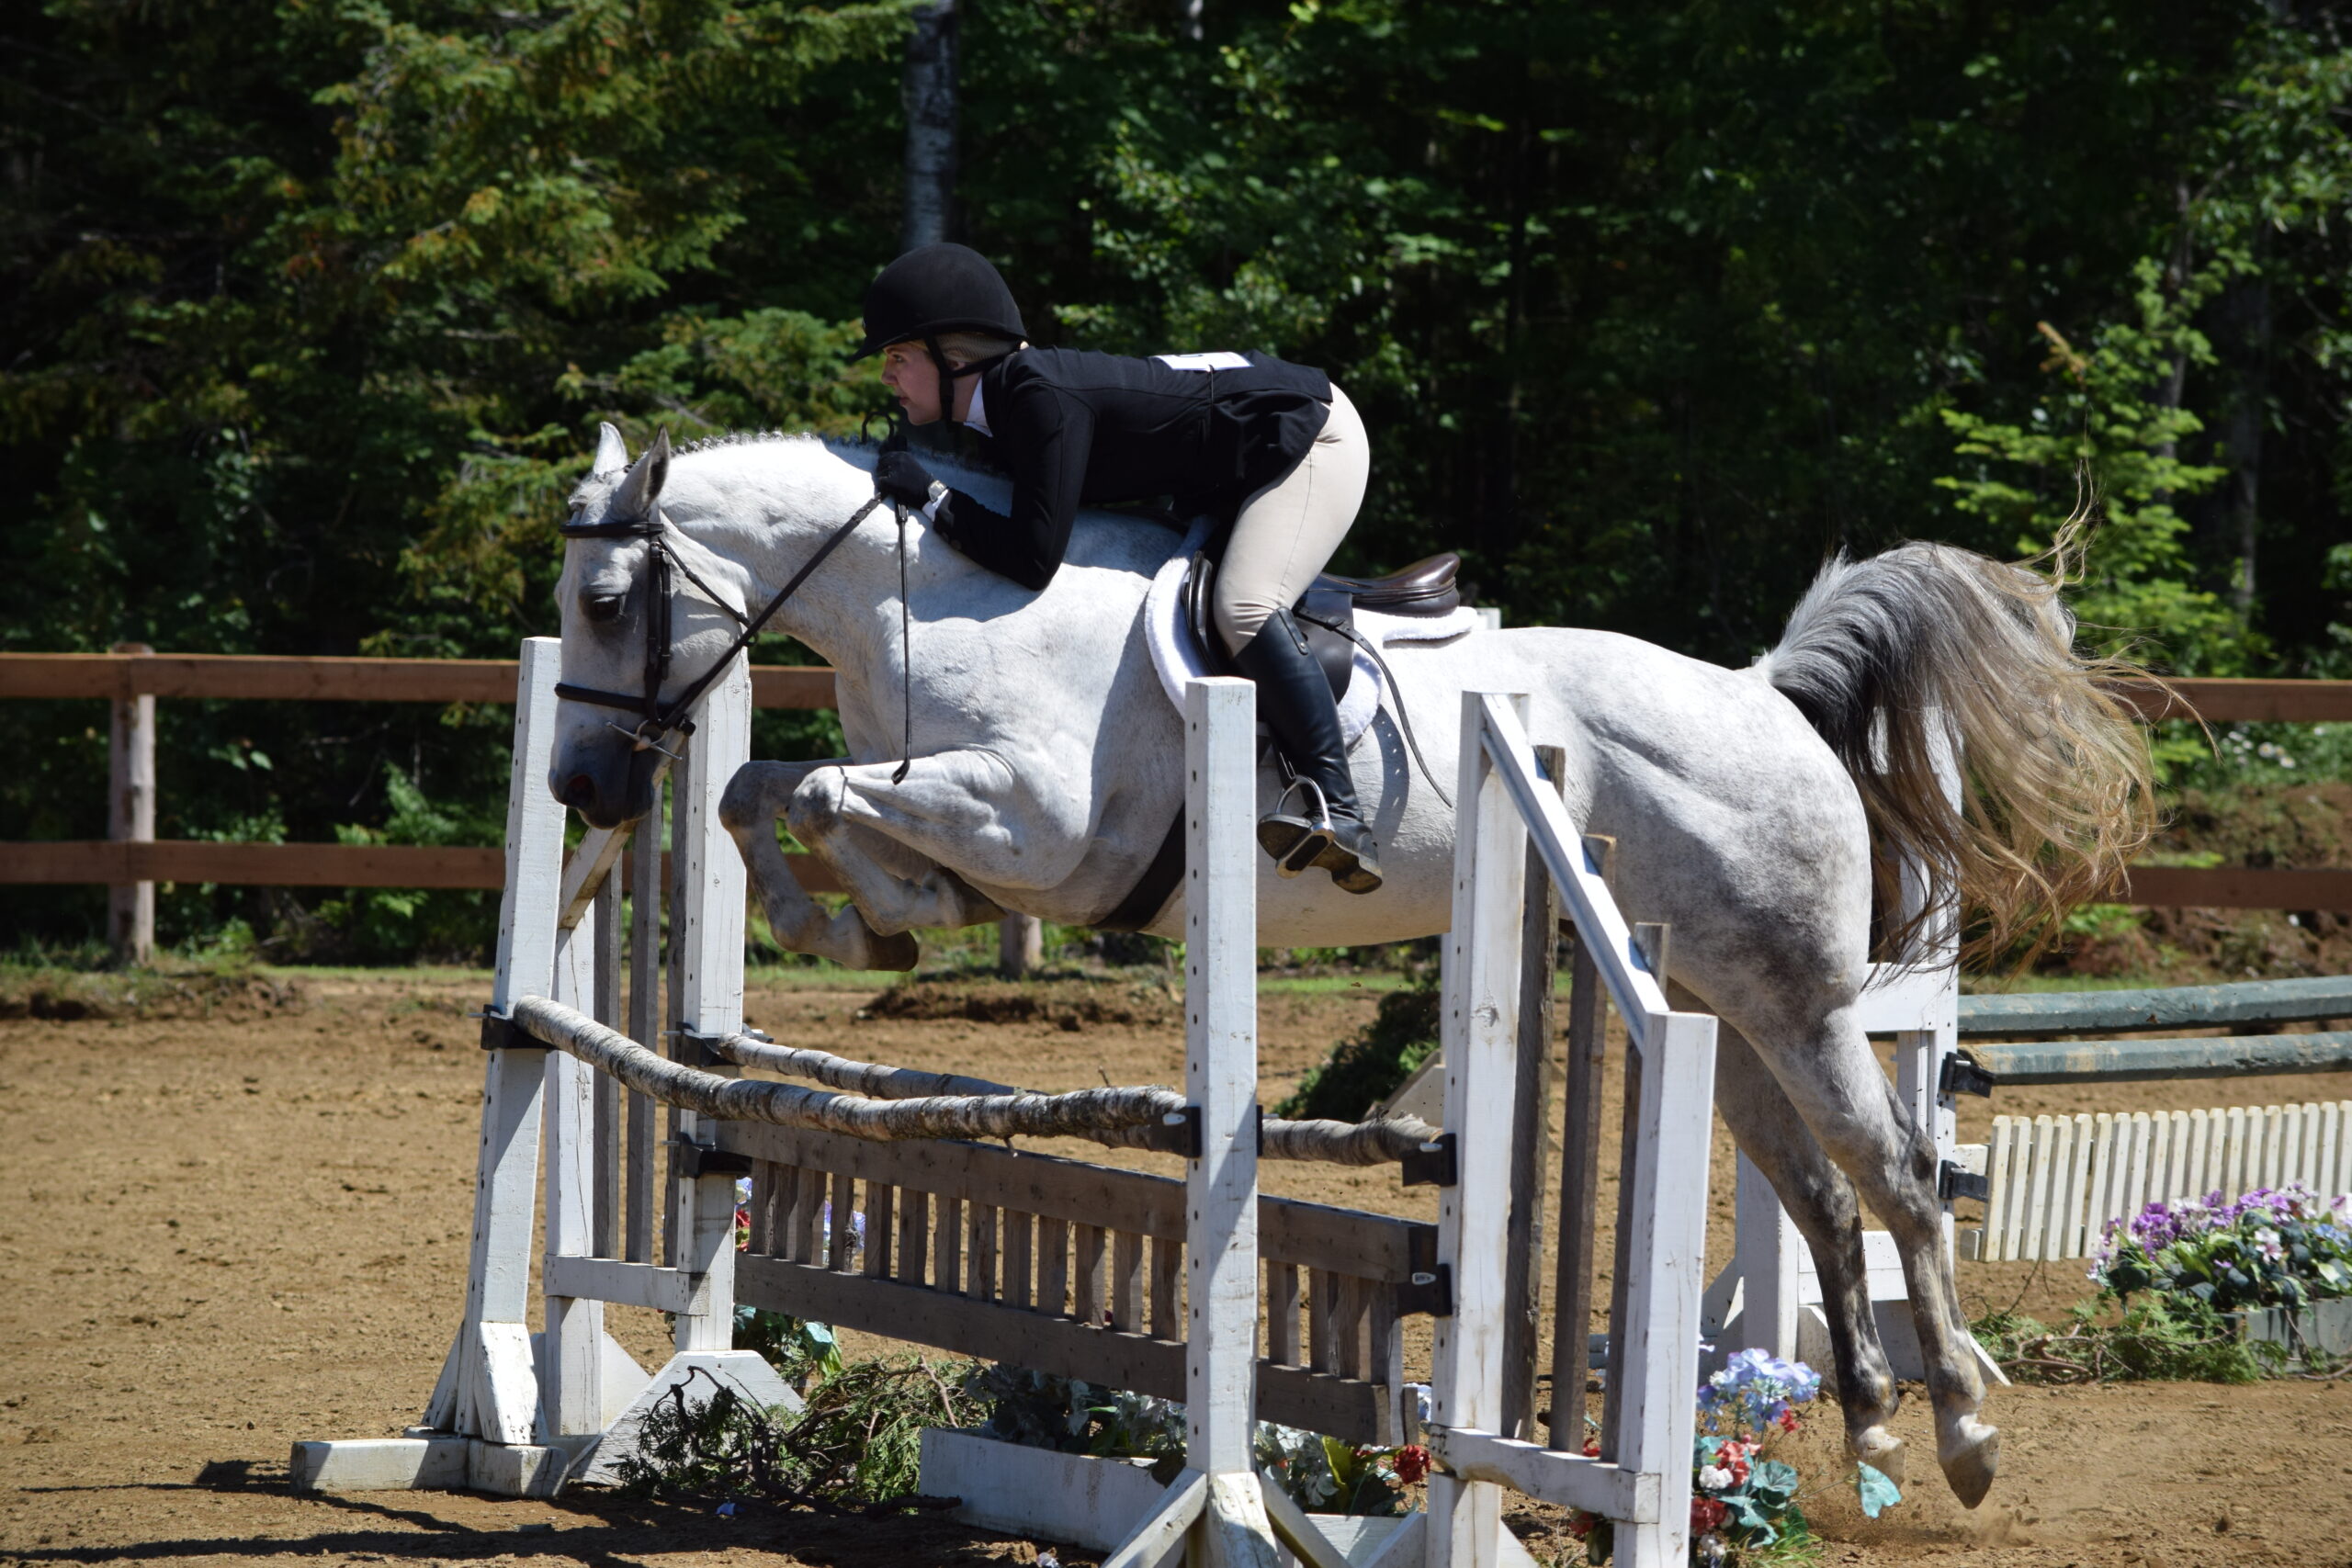 Élisabeh sur son cheval blanc Sunny au dessus de l'obstable en compétition